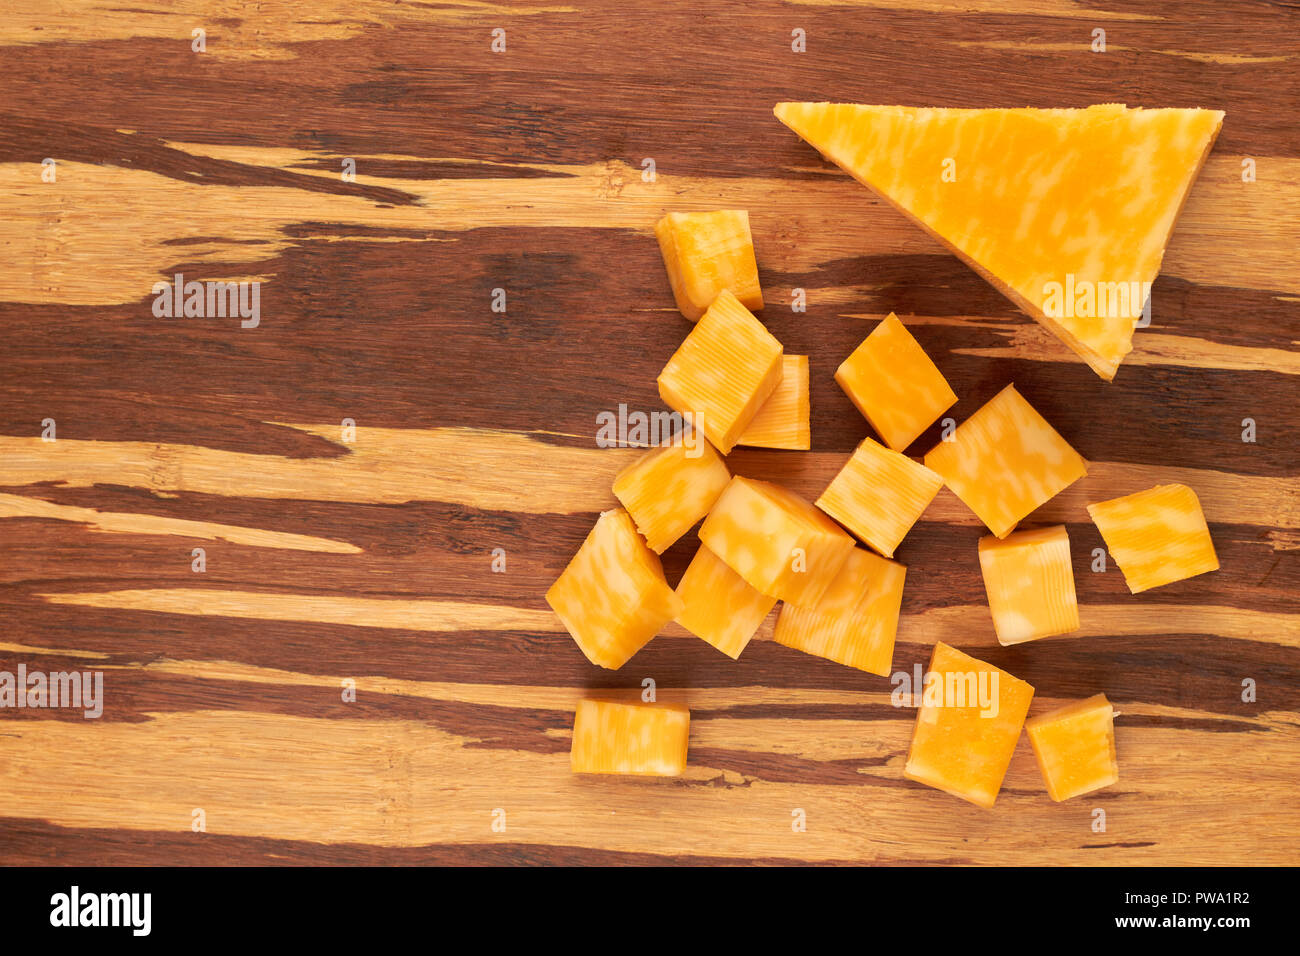 Würfel aus Marmor Käse auf Holz- Hintergrund. Marmor Käse auf strukturierte Holz. Köstliche Milchprodukt. Stockfoto